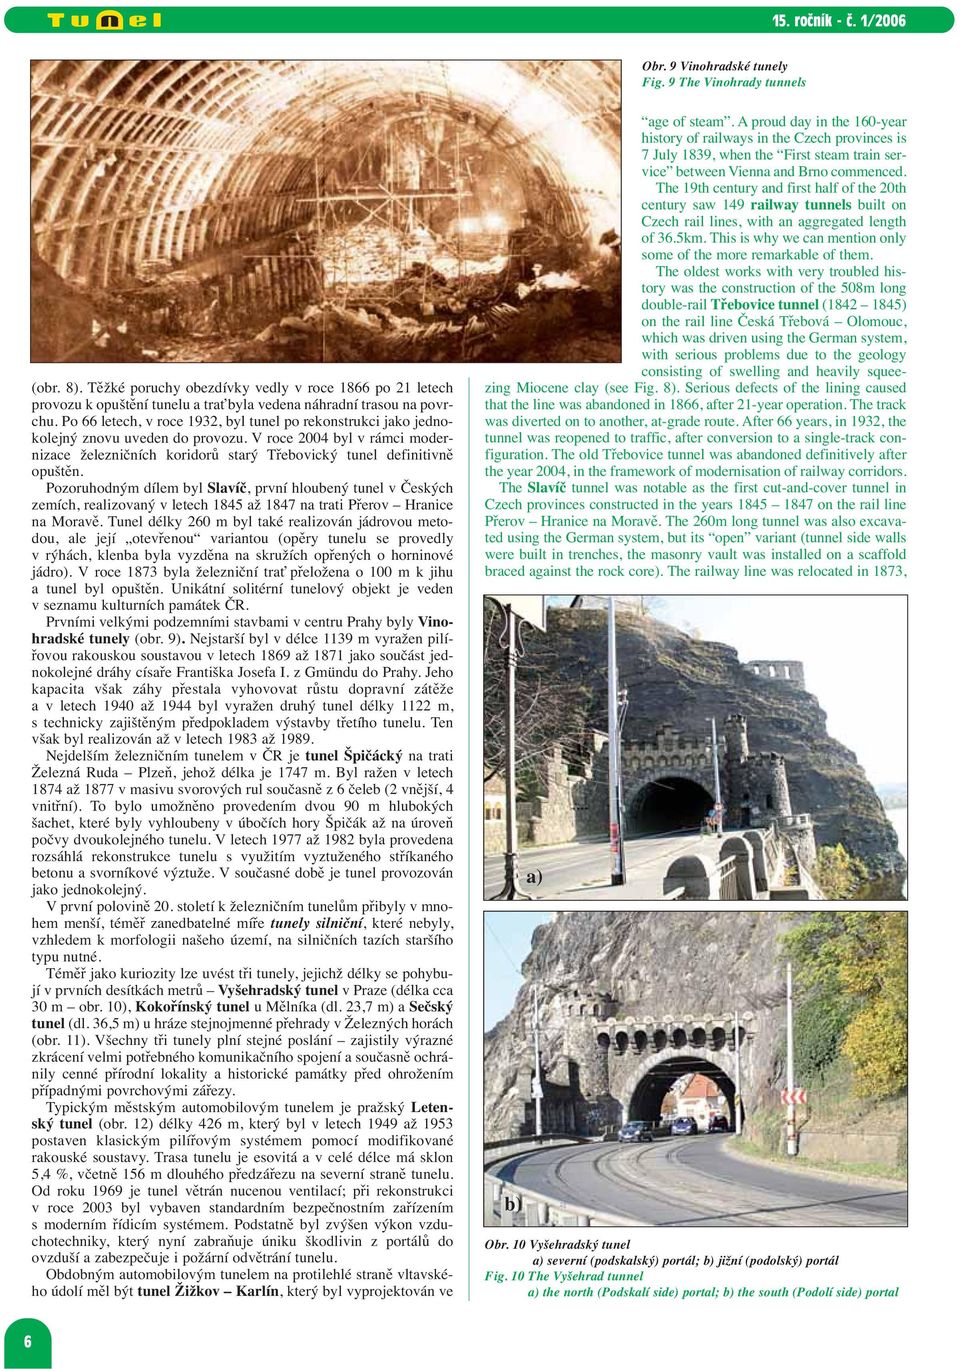 Pozoruhodným dílem byl Slavíč, první hloubený tunel v Českých zemích, realizovaný v letech 1845 až 1847 na trati Přerov Hranice na Moravě.